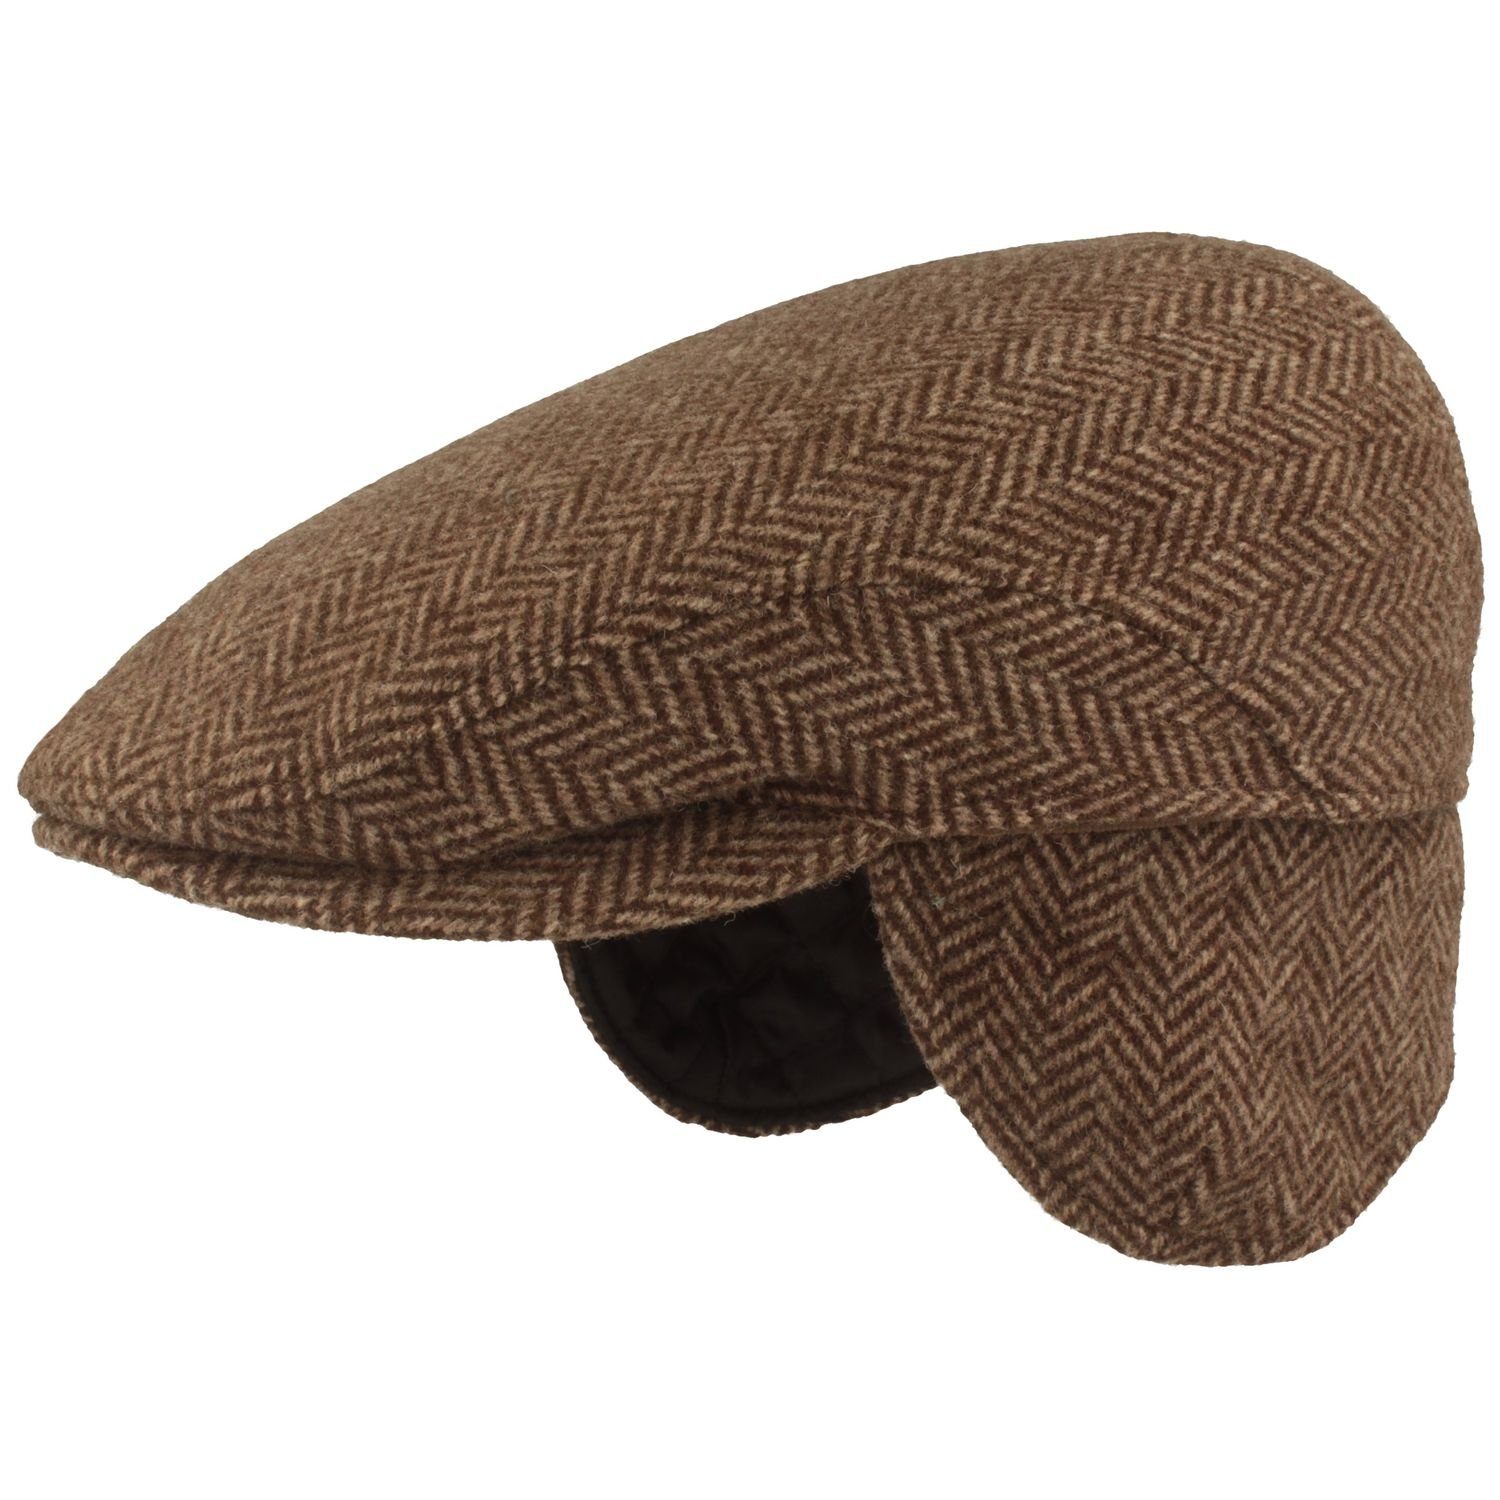 Breiter Schiebermütze elegante Flatcap in breitem Fischgrät-Muster 07 braun